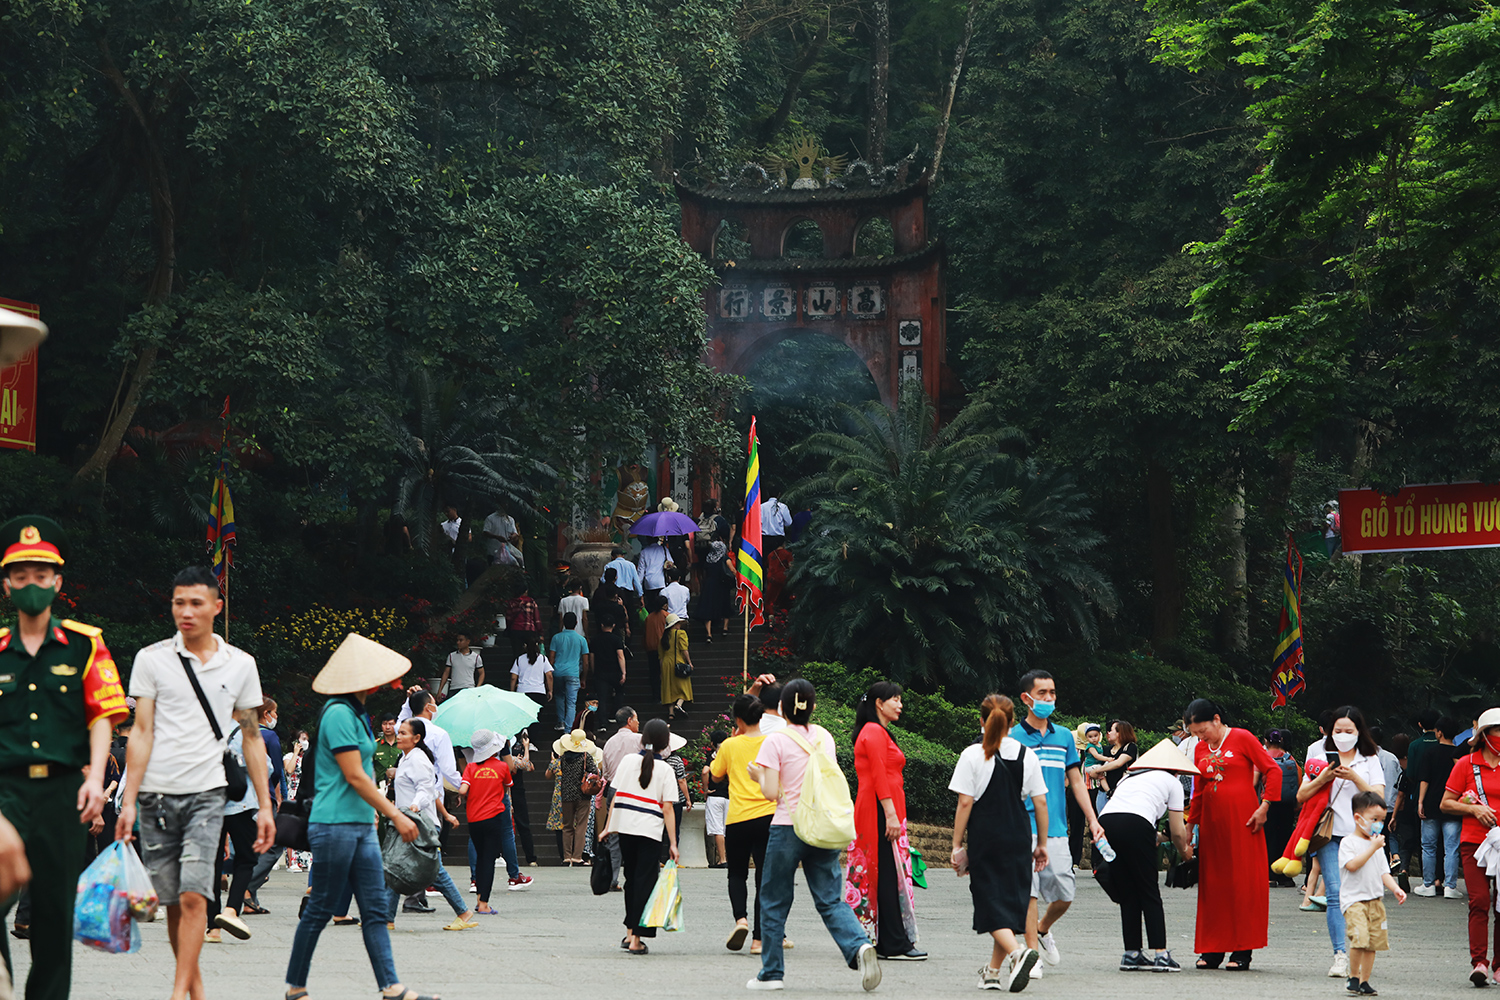 Hàng nghìn người đổ về Đền Hùng trước ngày chính lễ 10/3 - 2